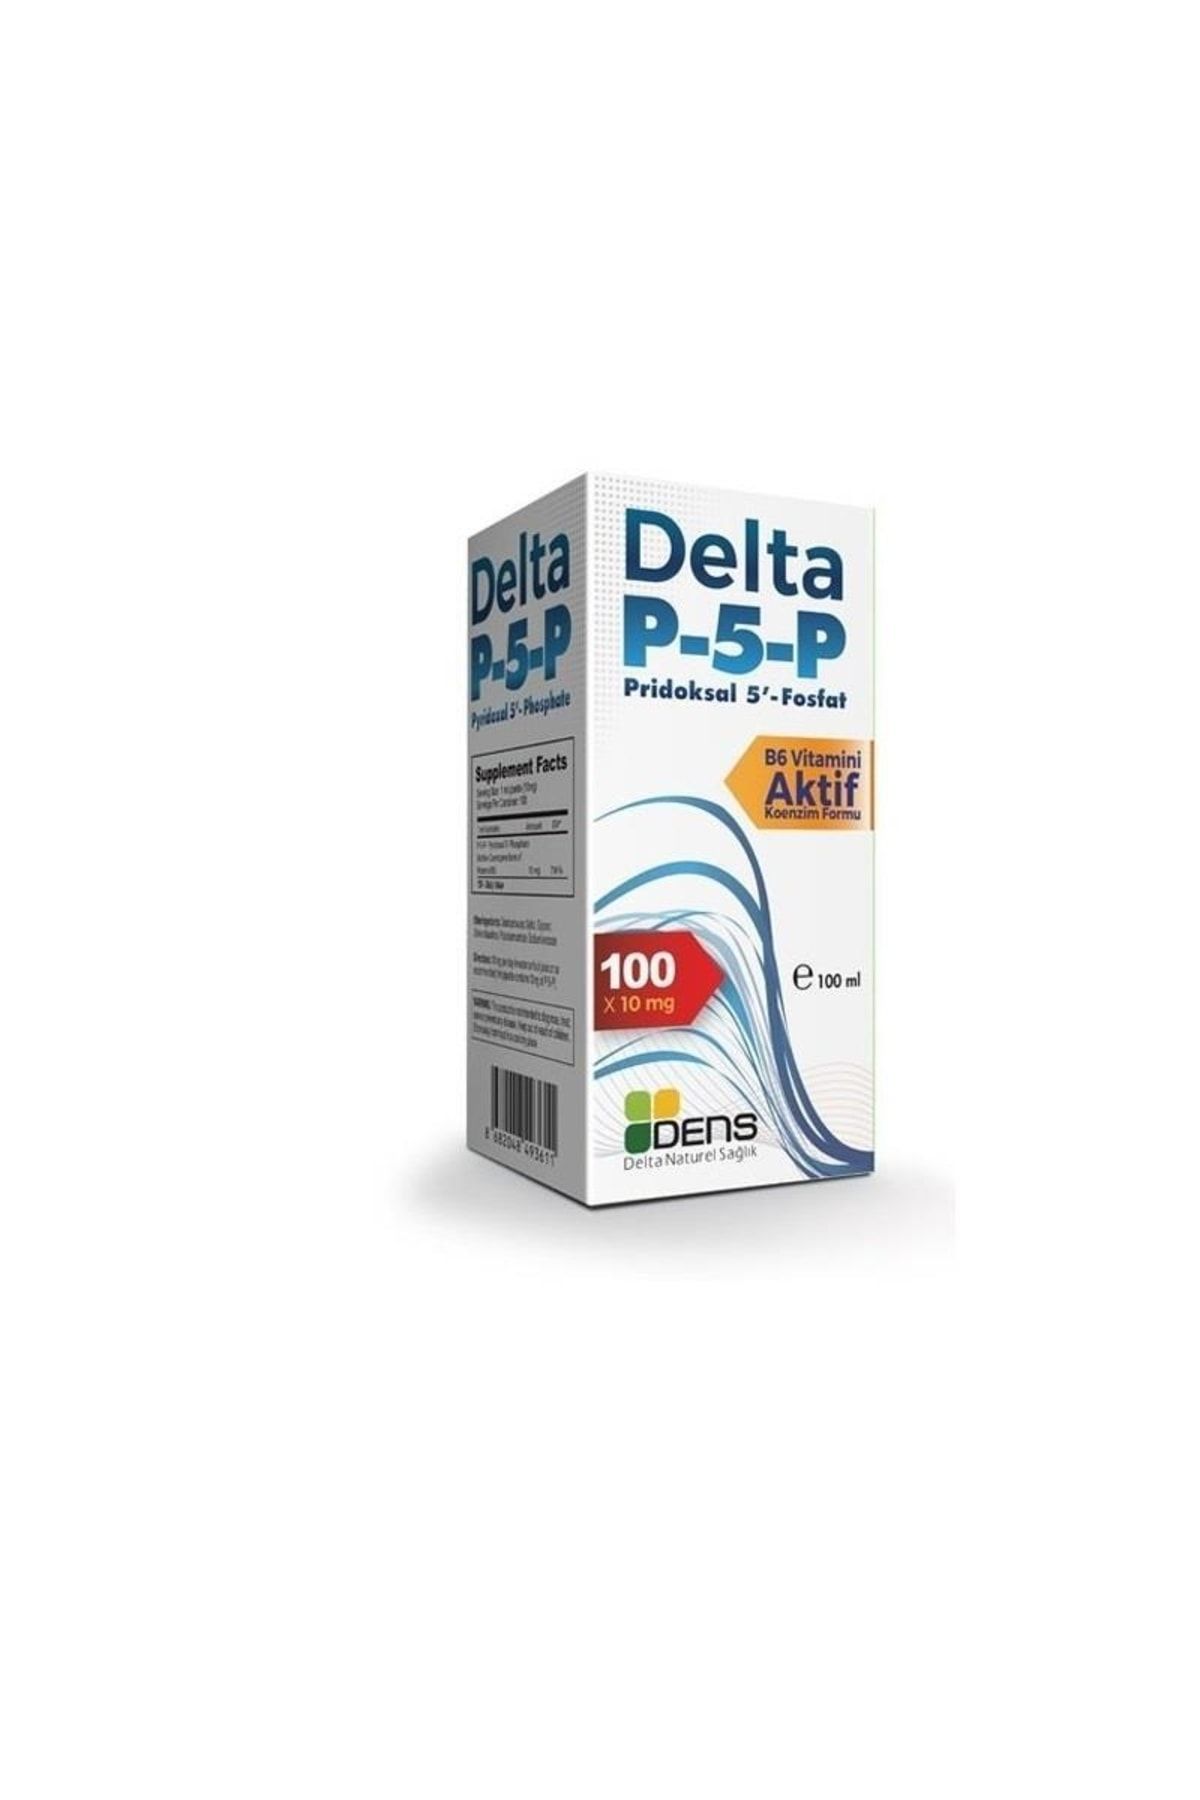 Delta P-5-p Pridoksal 5 Fosfat - Vitamin B6 Şurup 100ml